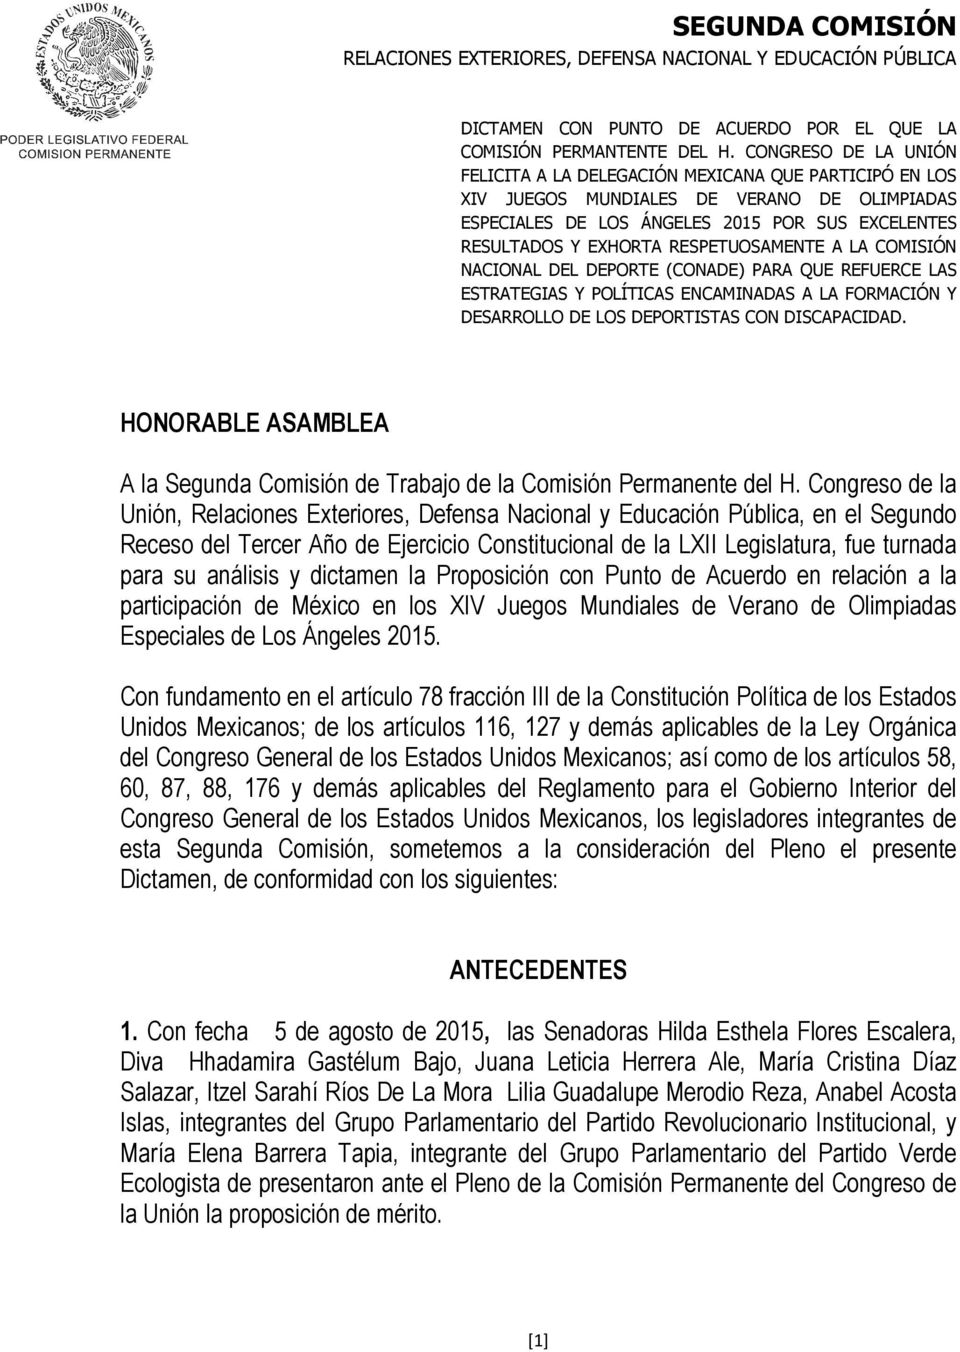 y dictamen la Proposición con Punto de Acuerdo en relación a la participación de México en los XIV Juegos Mundiales de Verano de Olimpiadas Especiales de Los Ángeles 2015.